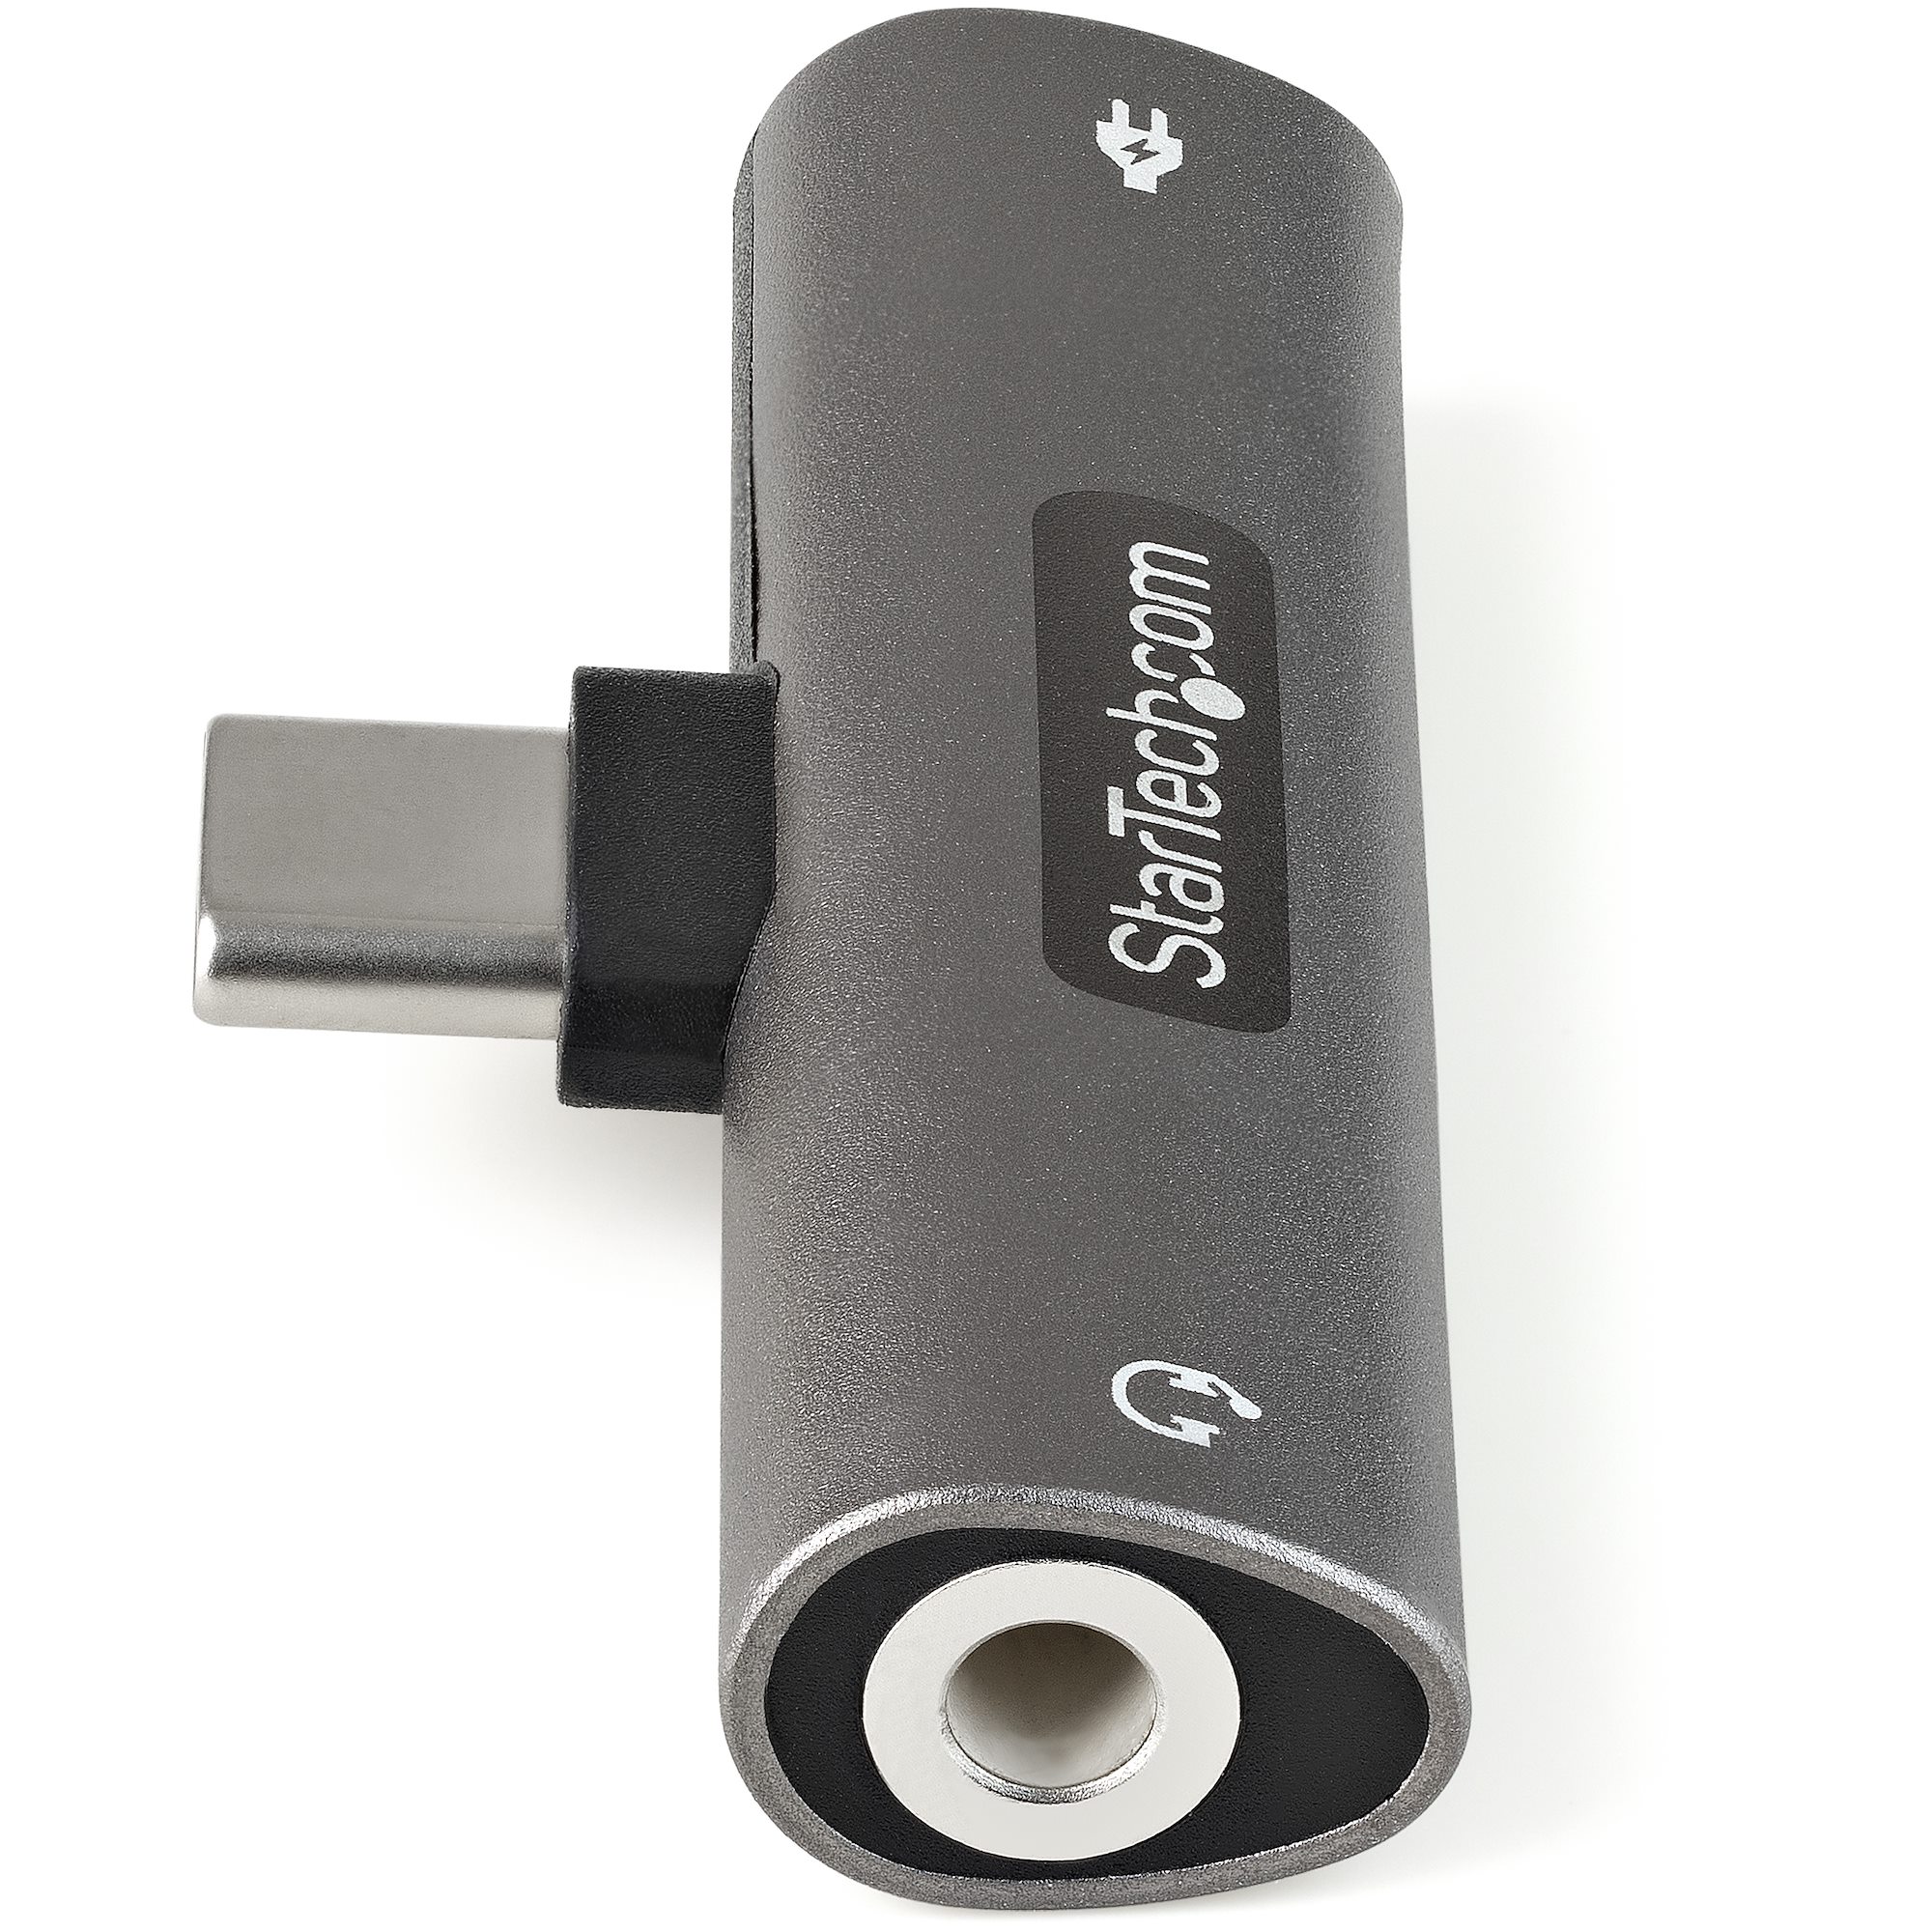 Adaptador USB tipo C a 3,5 mm para auriculares y cargador, 2 en 1